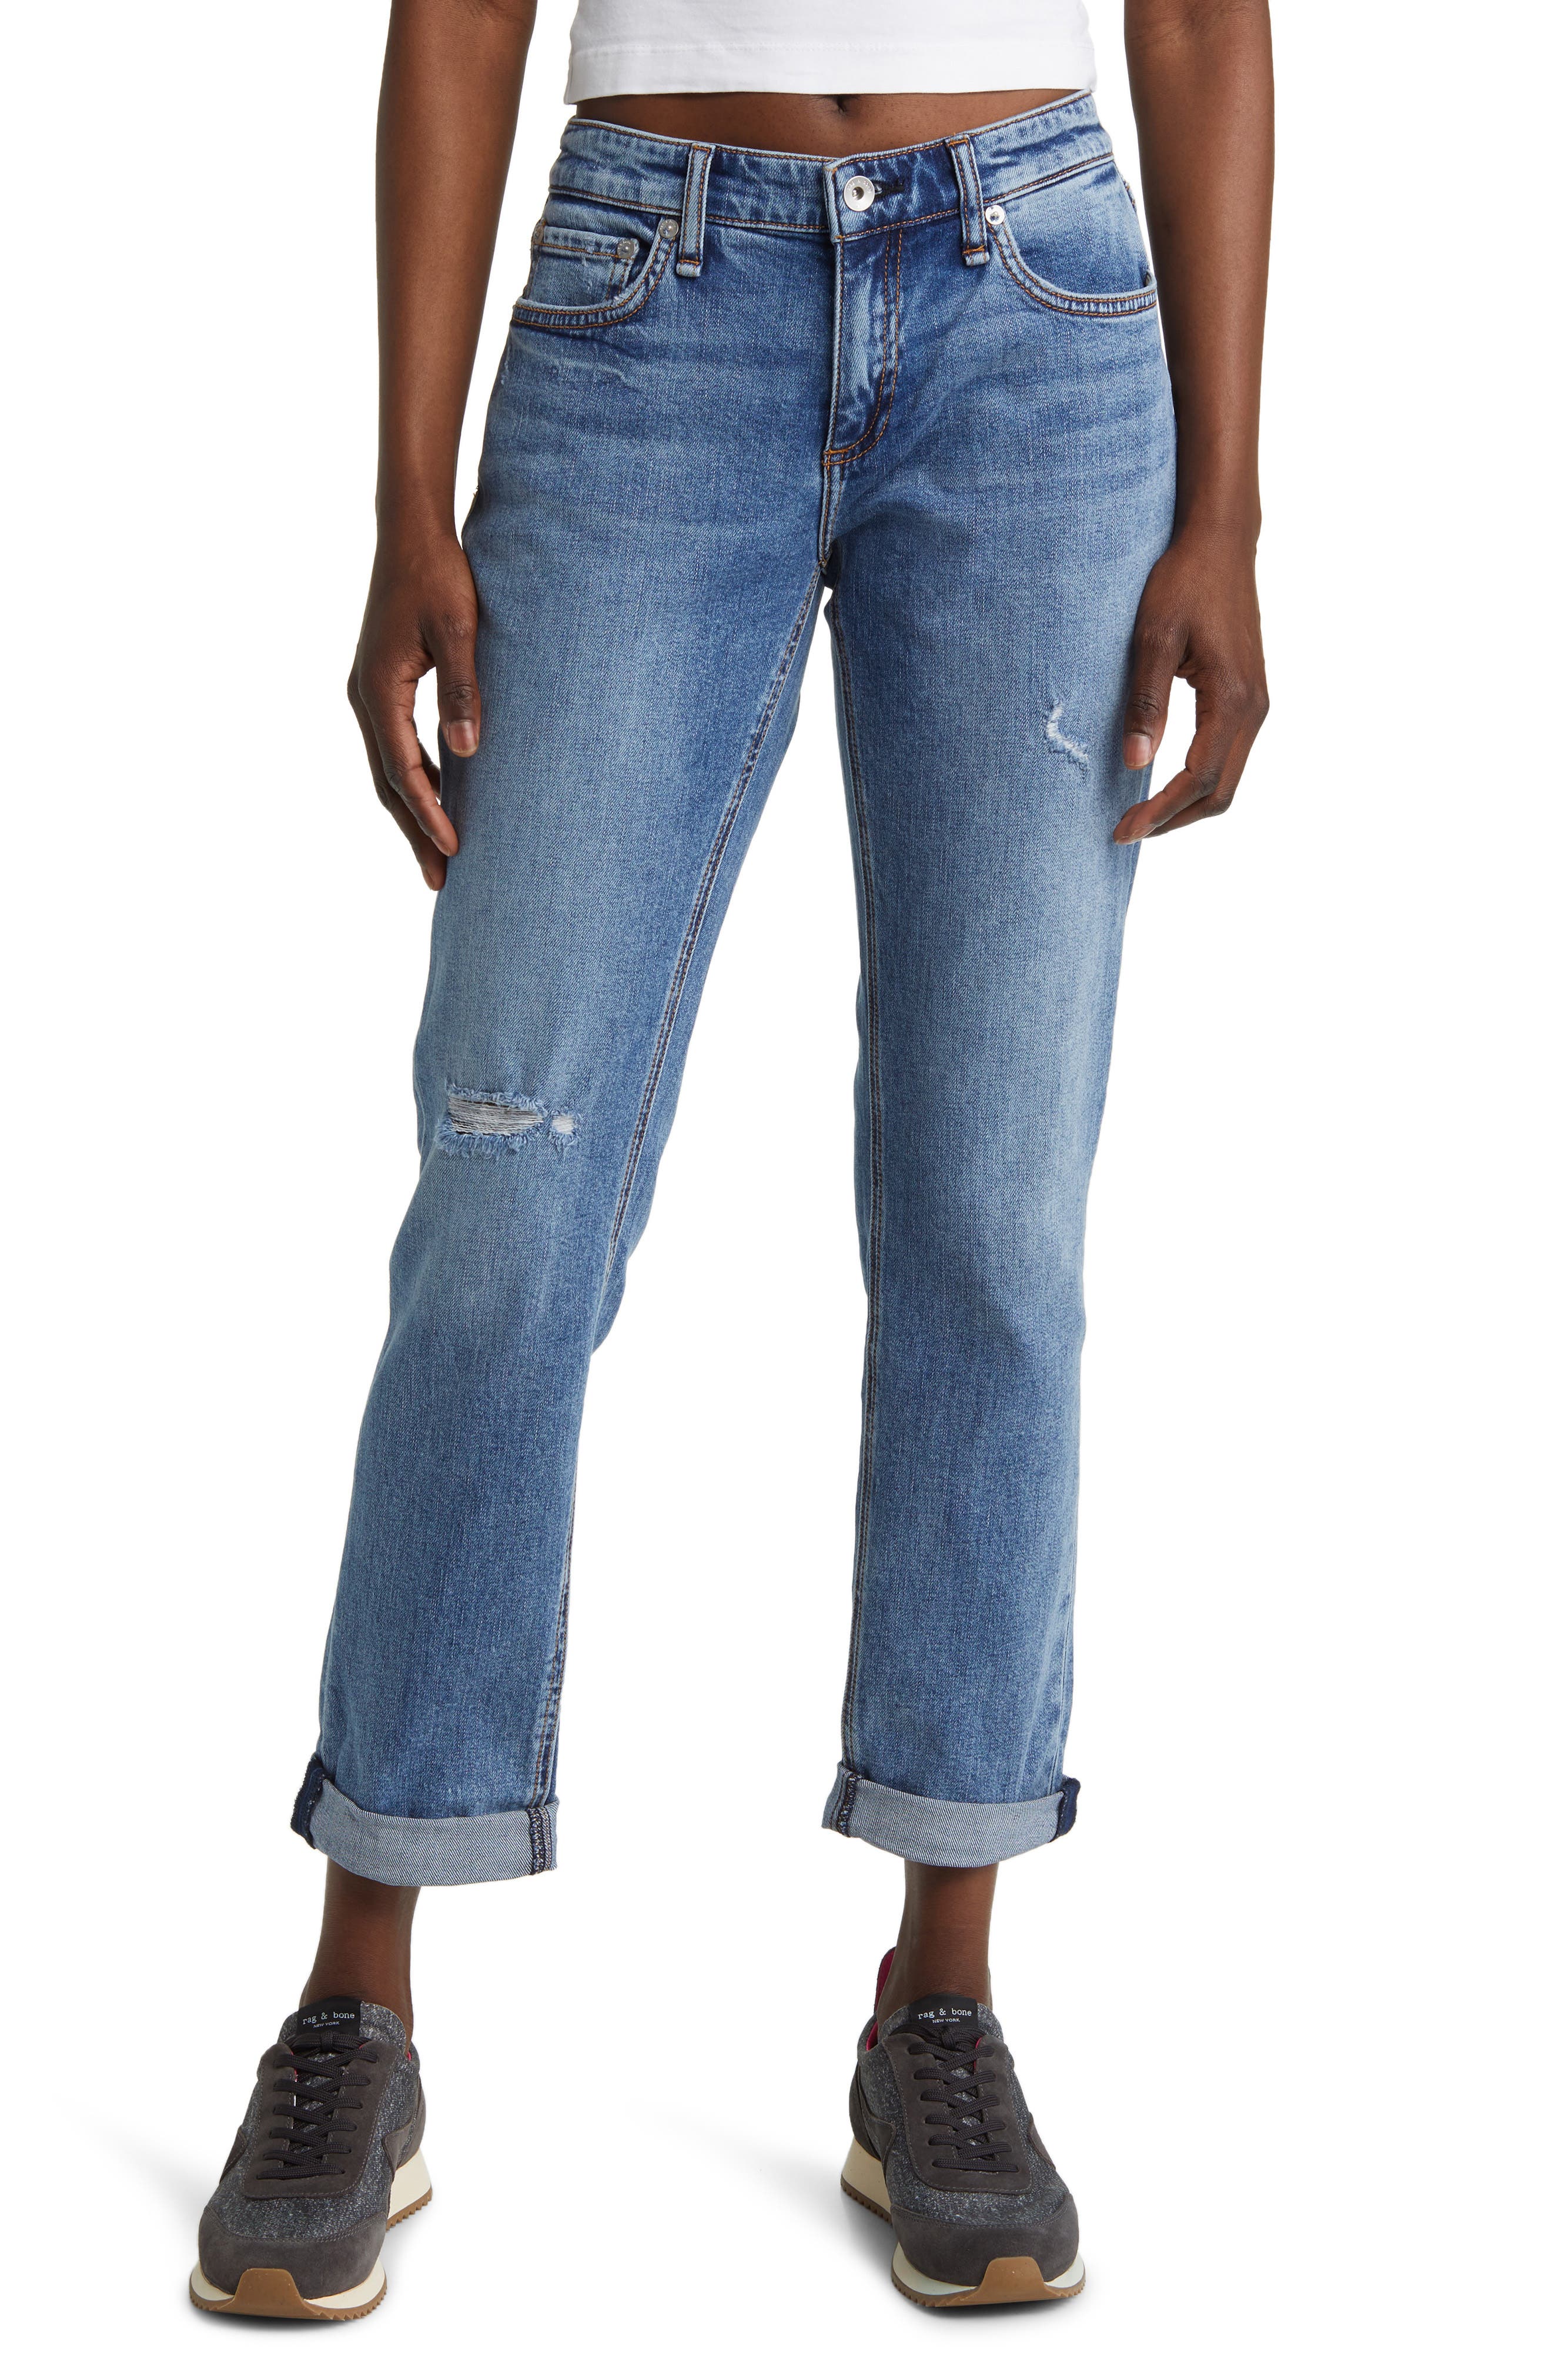 Women's Rag & bone Jeans & Denim   Nordstrom